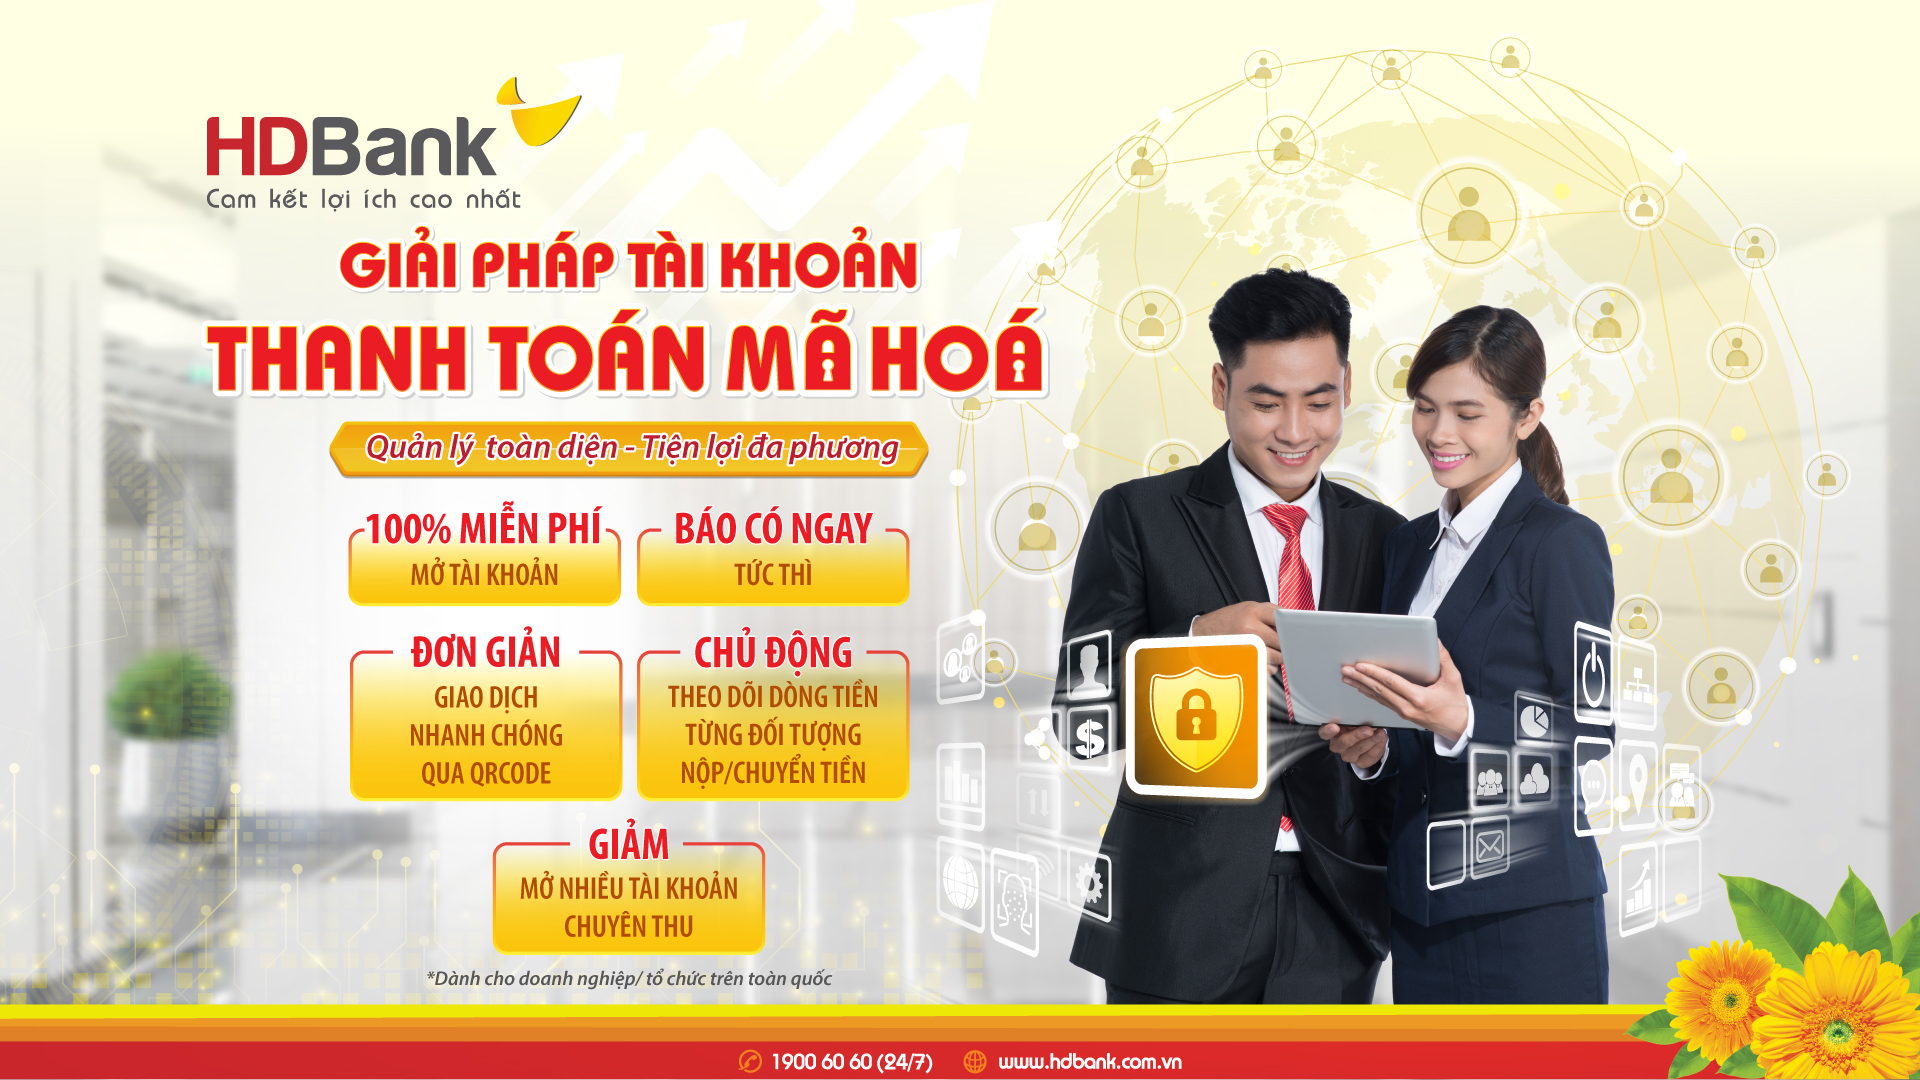 HDBank triển khai giải pháp tài khoản thanh toán mã hoá siêu tiện lợi - Ảnh 2.